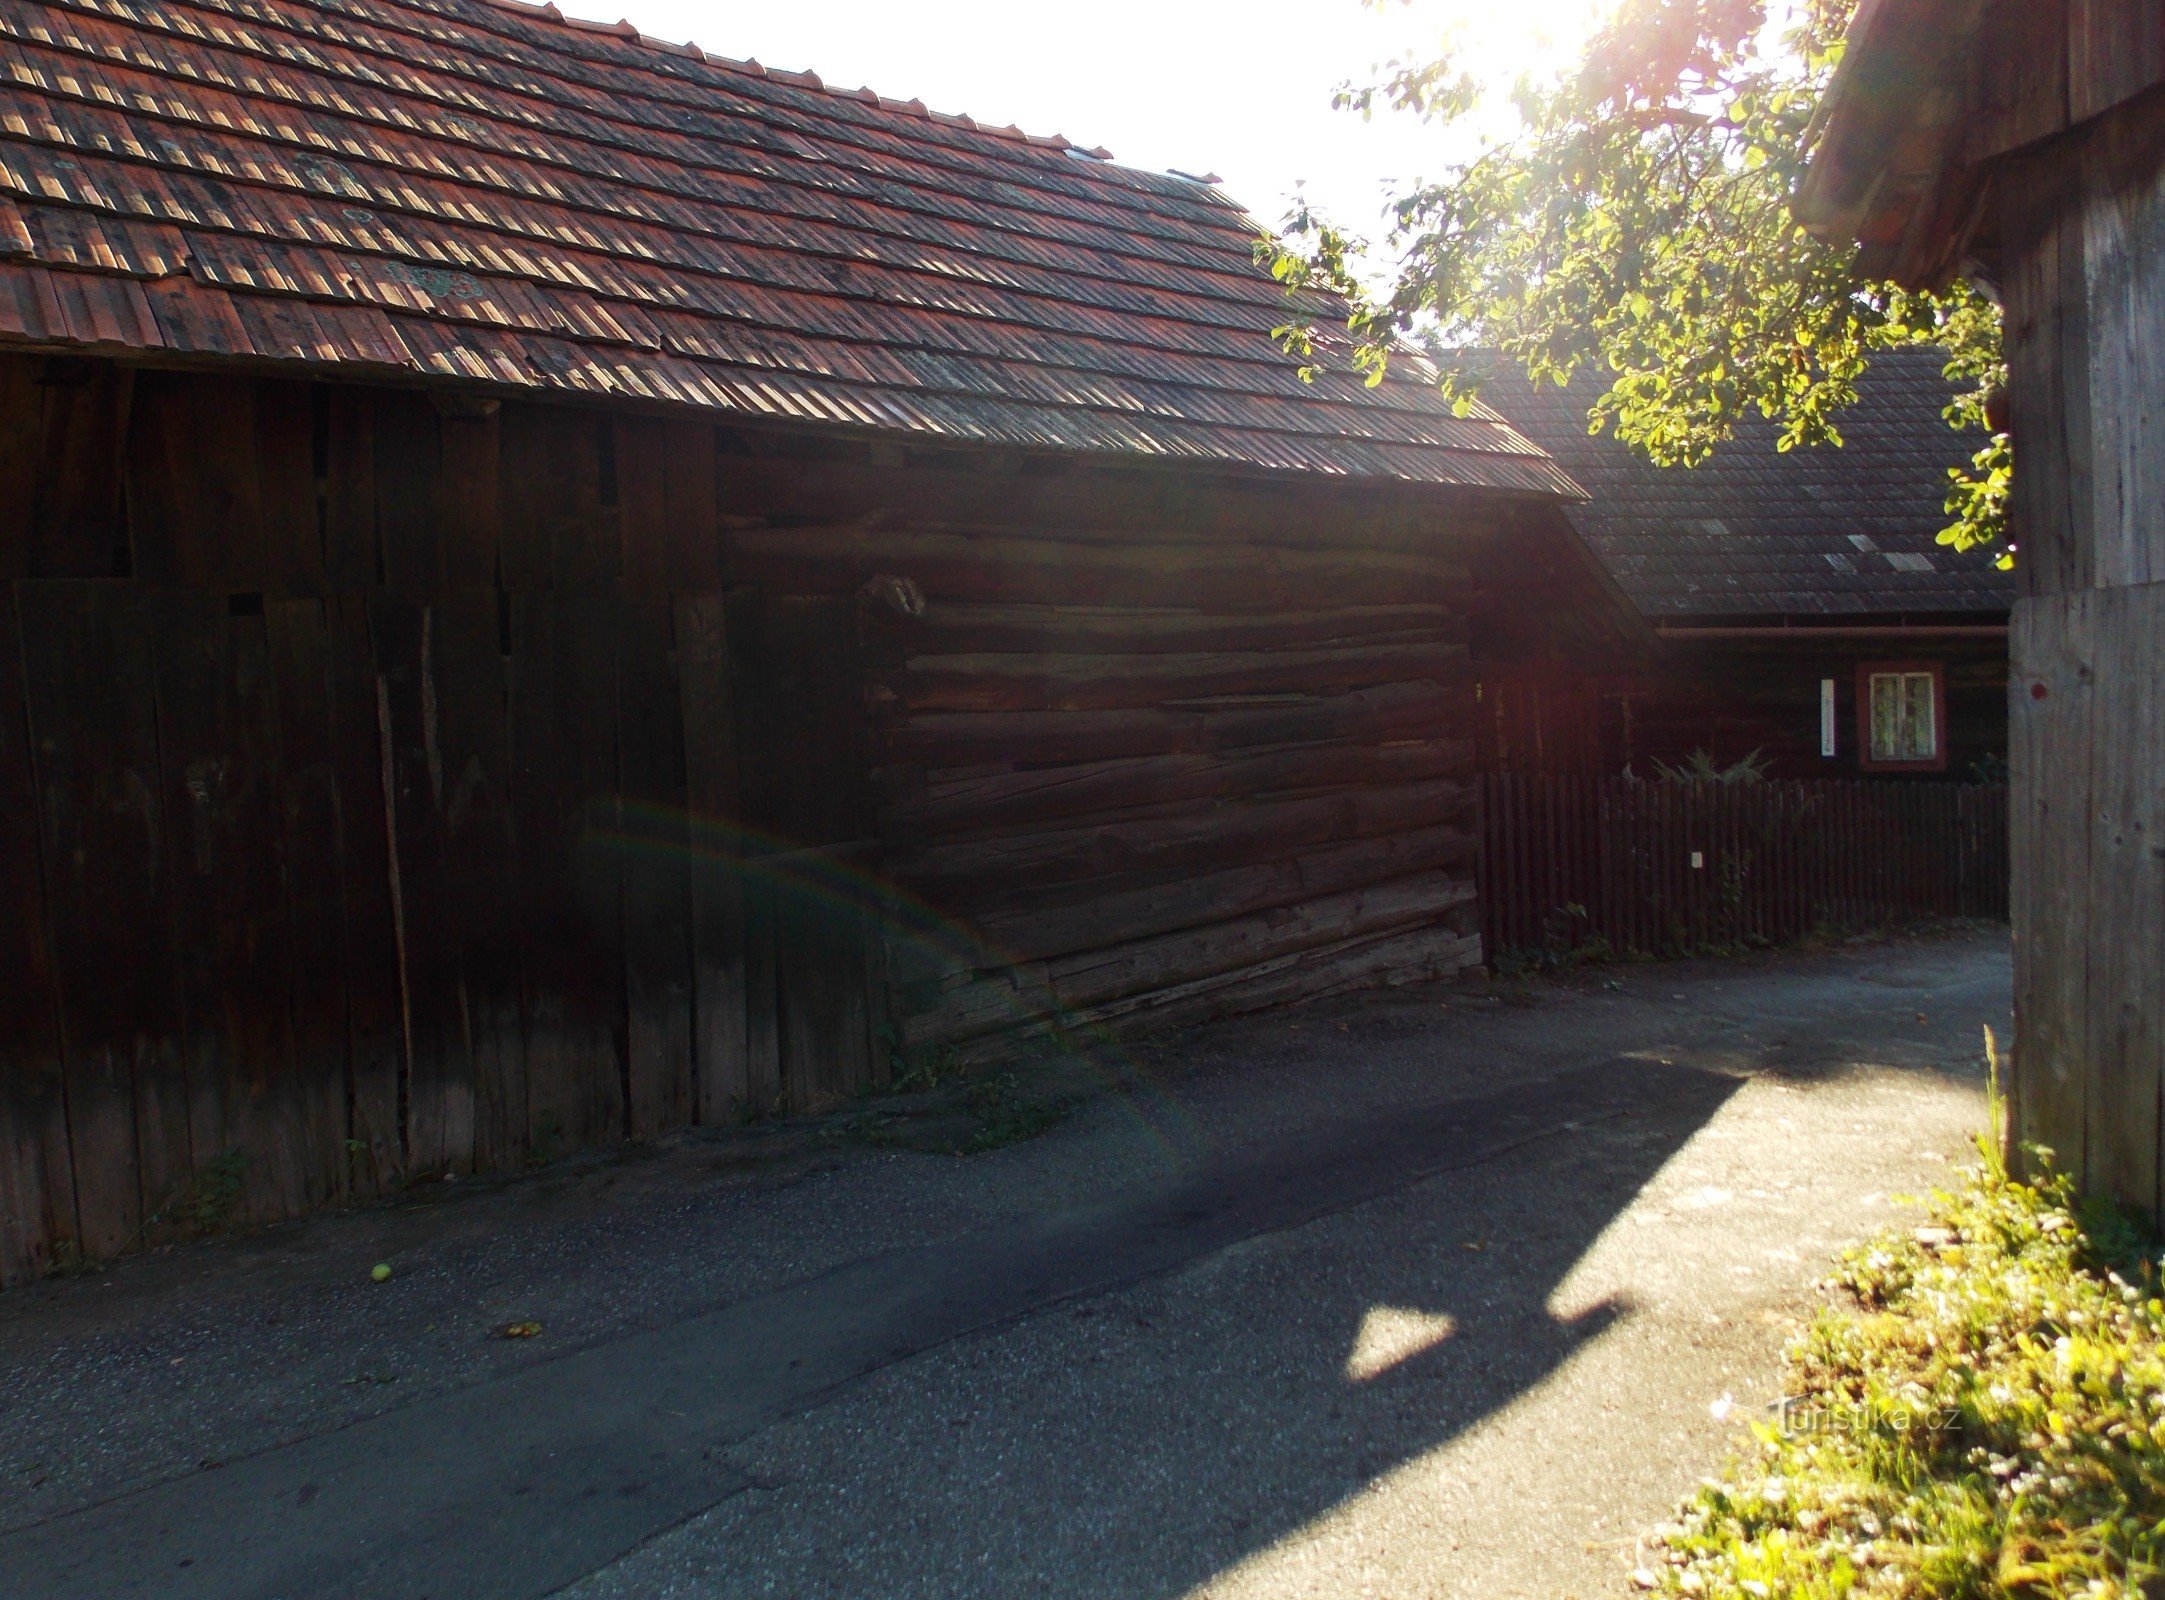 Beispiel der walachischen Volksarchitektur des Dorfes Prlov